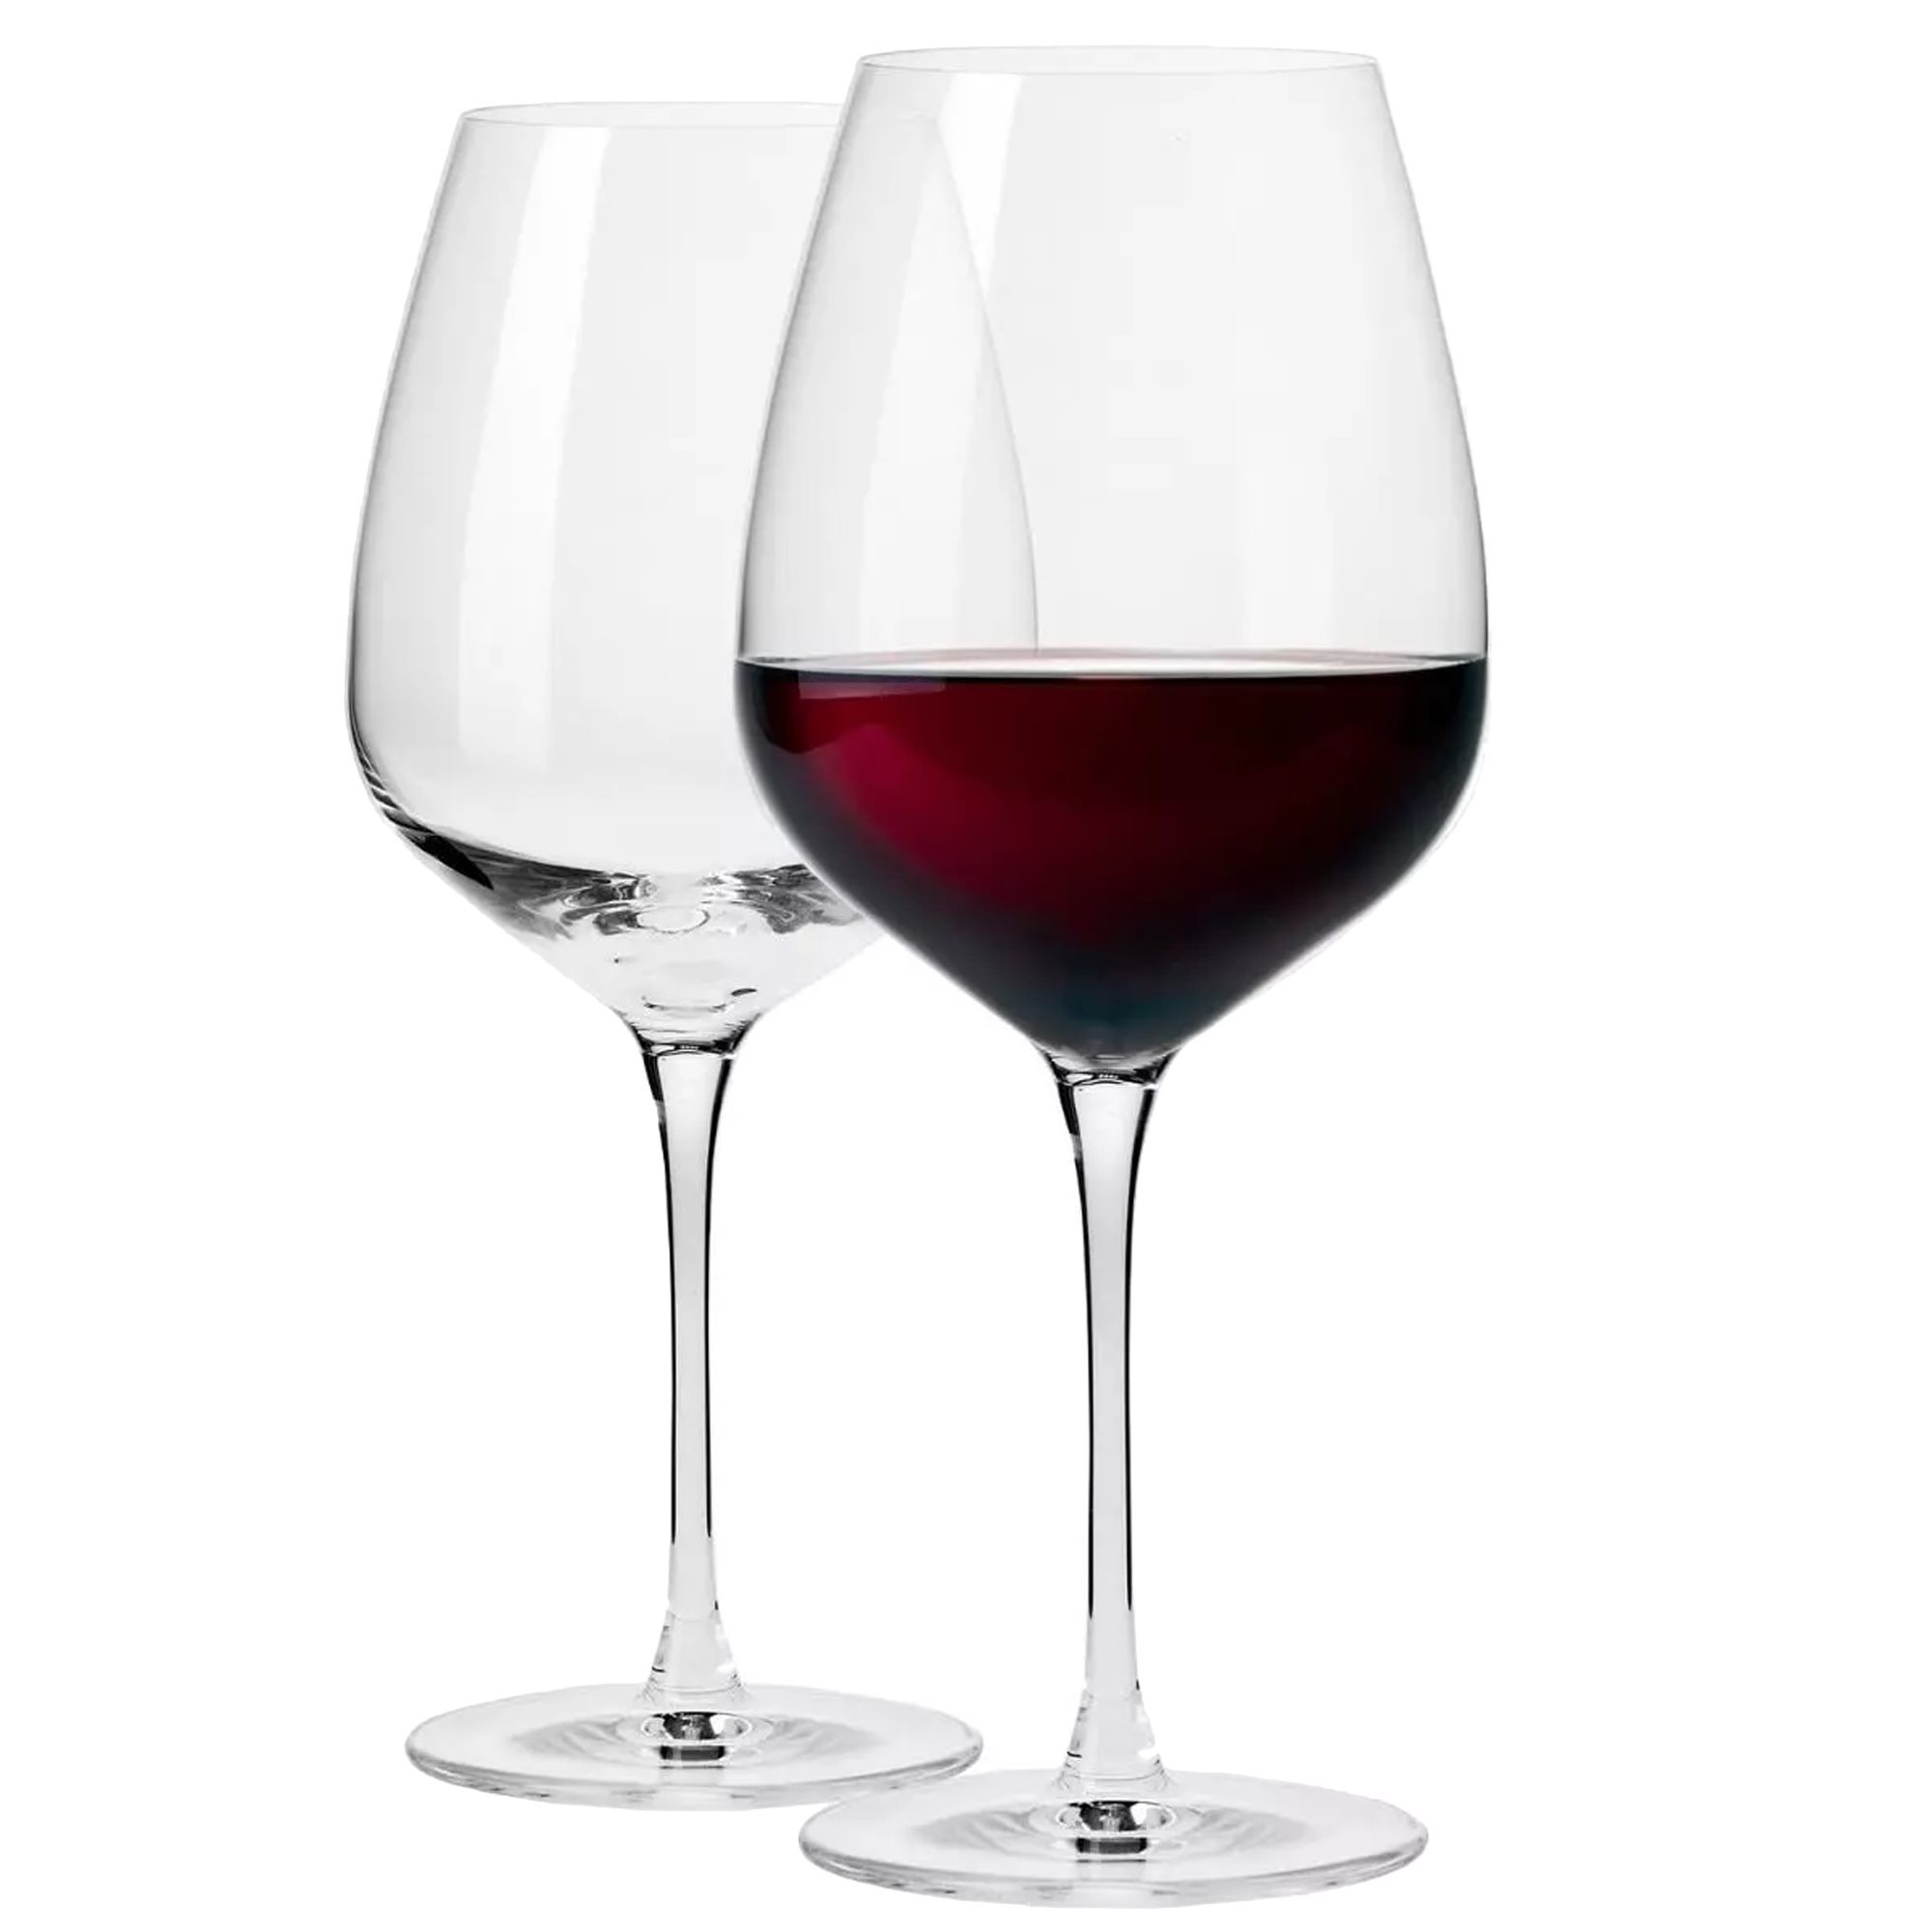 https://cdn.www.kitchenshop.eu/images/thumbs/0165979_set-2-pahare-vin-pinot-noir-sticla-cristalina-700ml-duet-krosno.jpeg